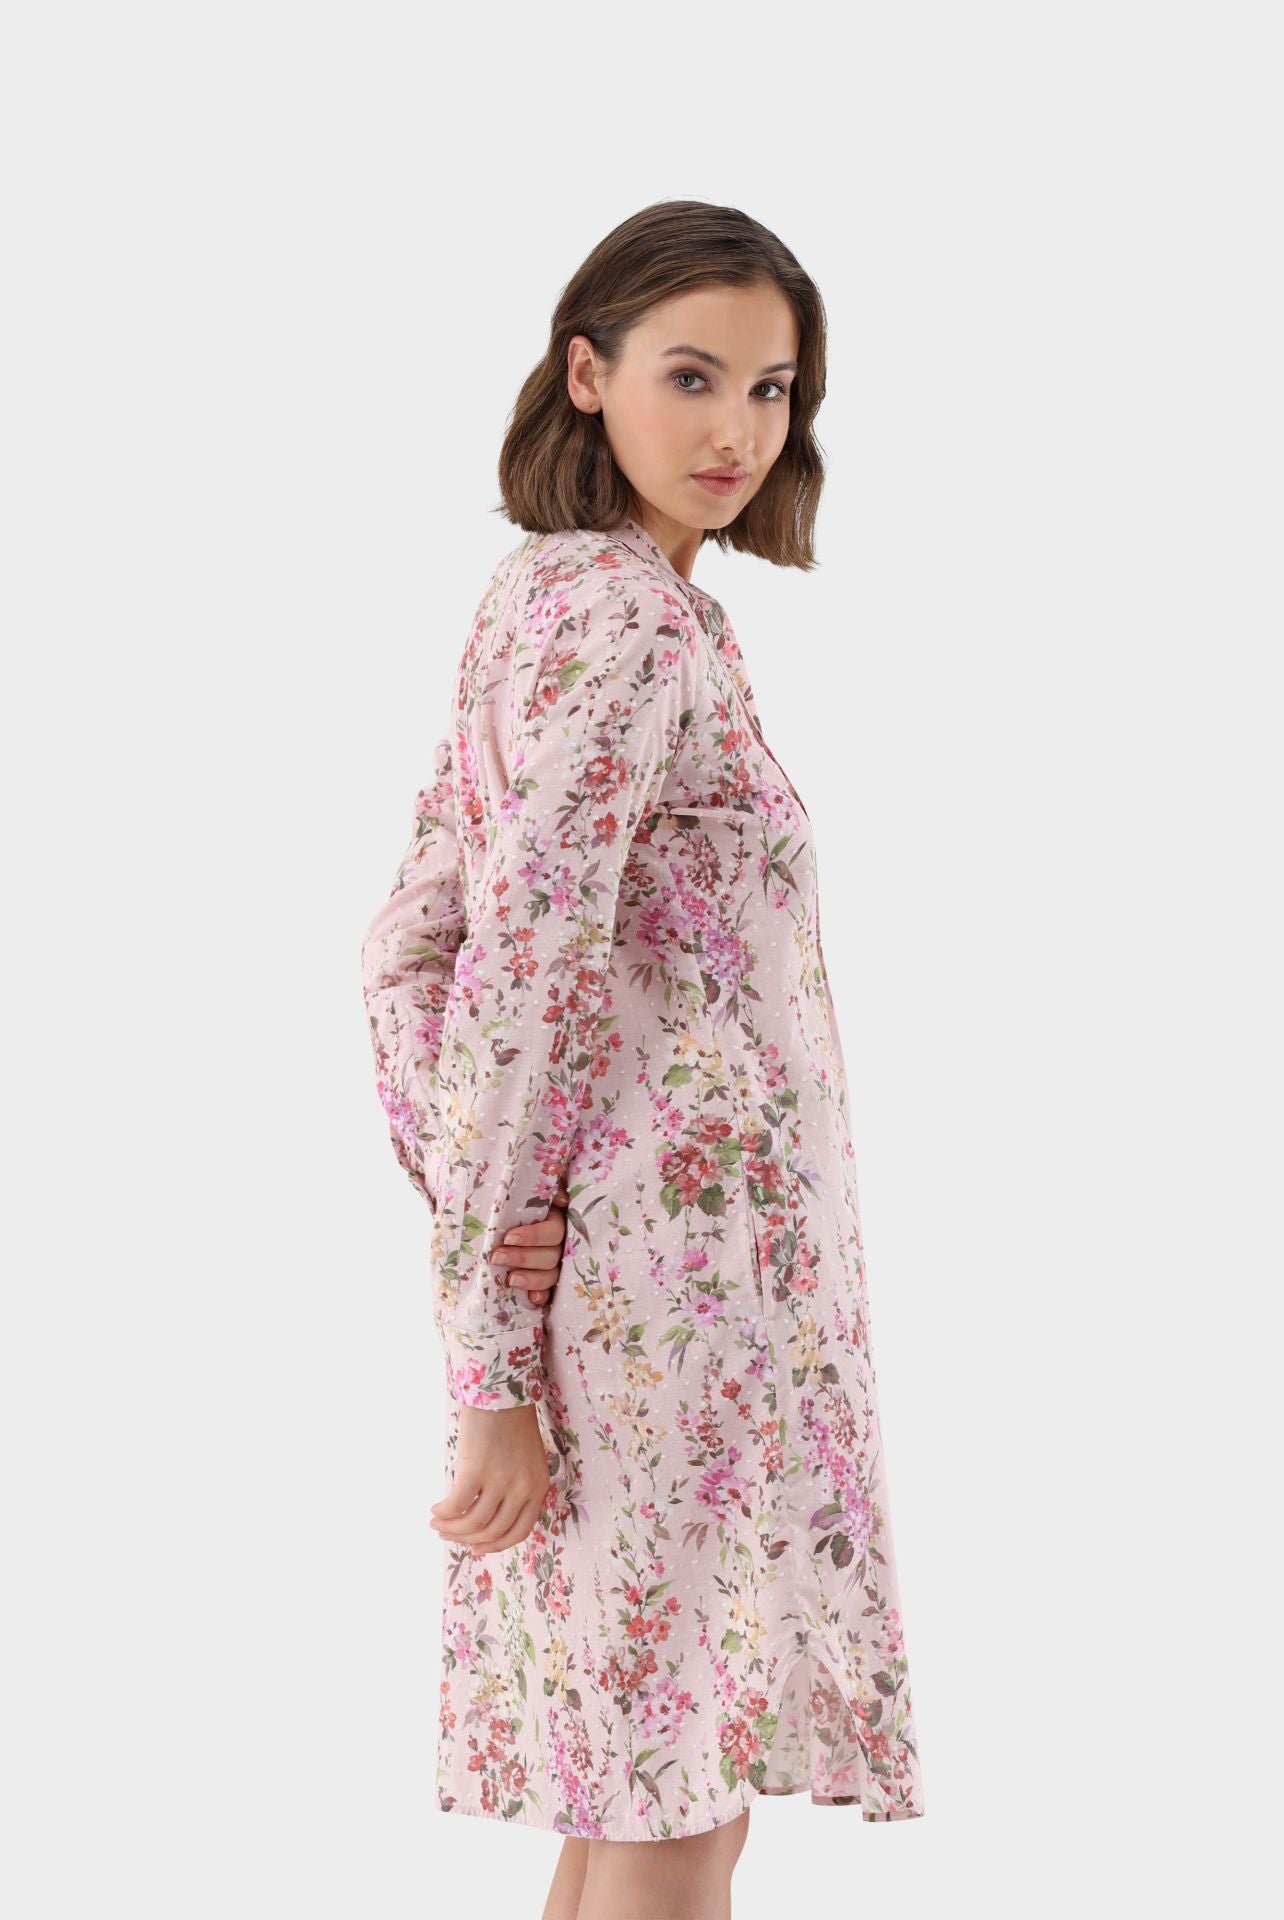 Cotton Voile Plumetis Floral Dress